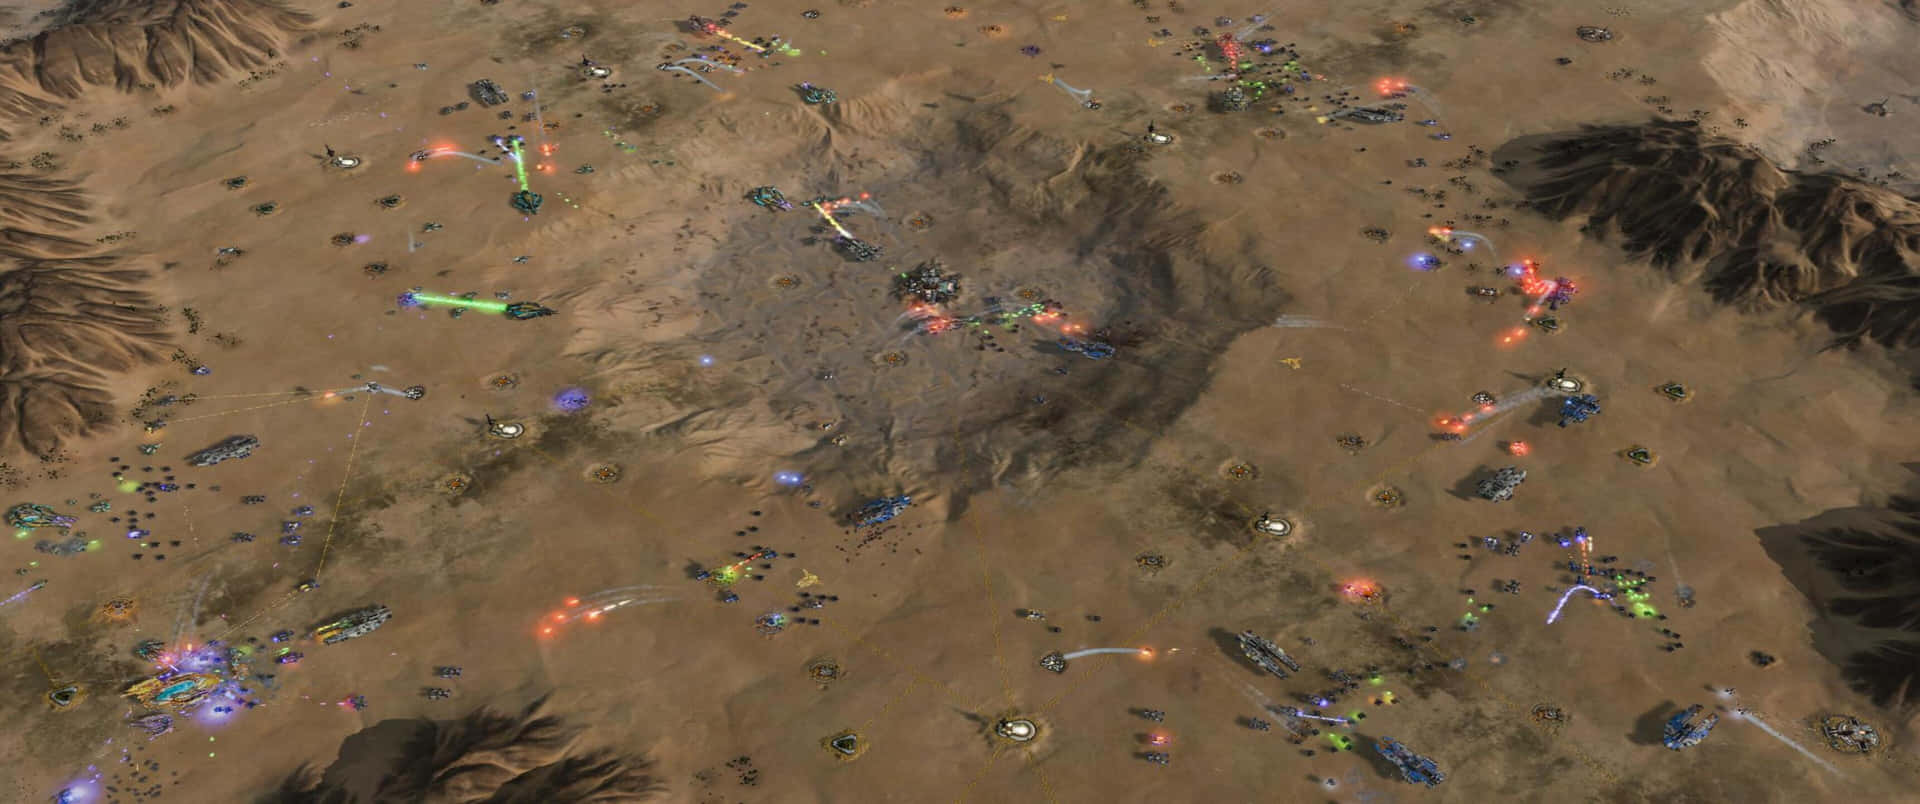 A Screenshot Of A Star Wars Battle In The Desert